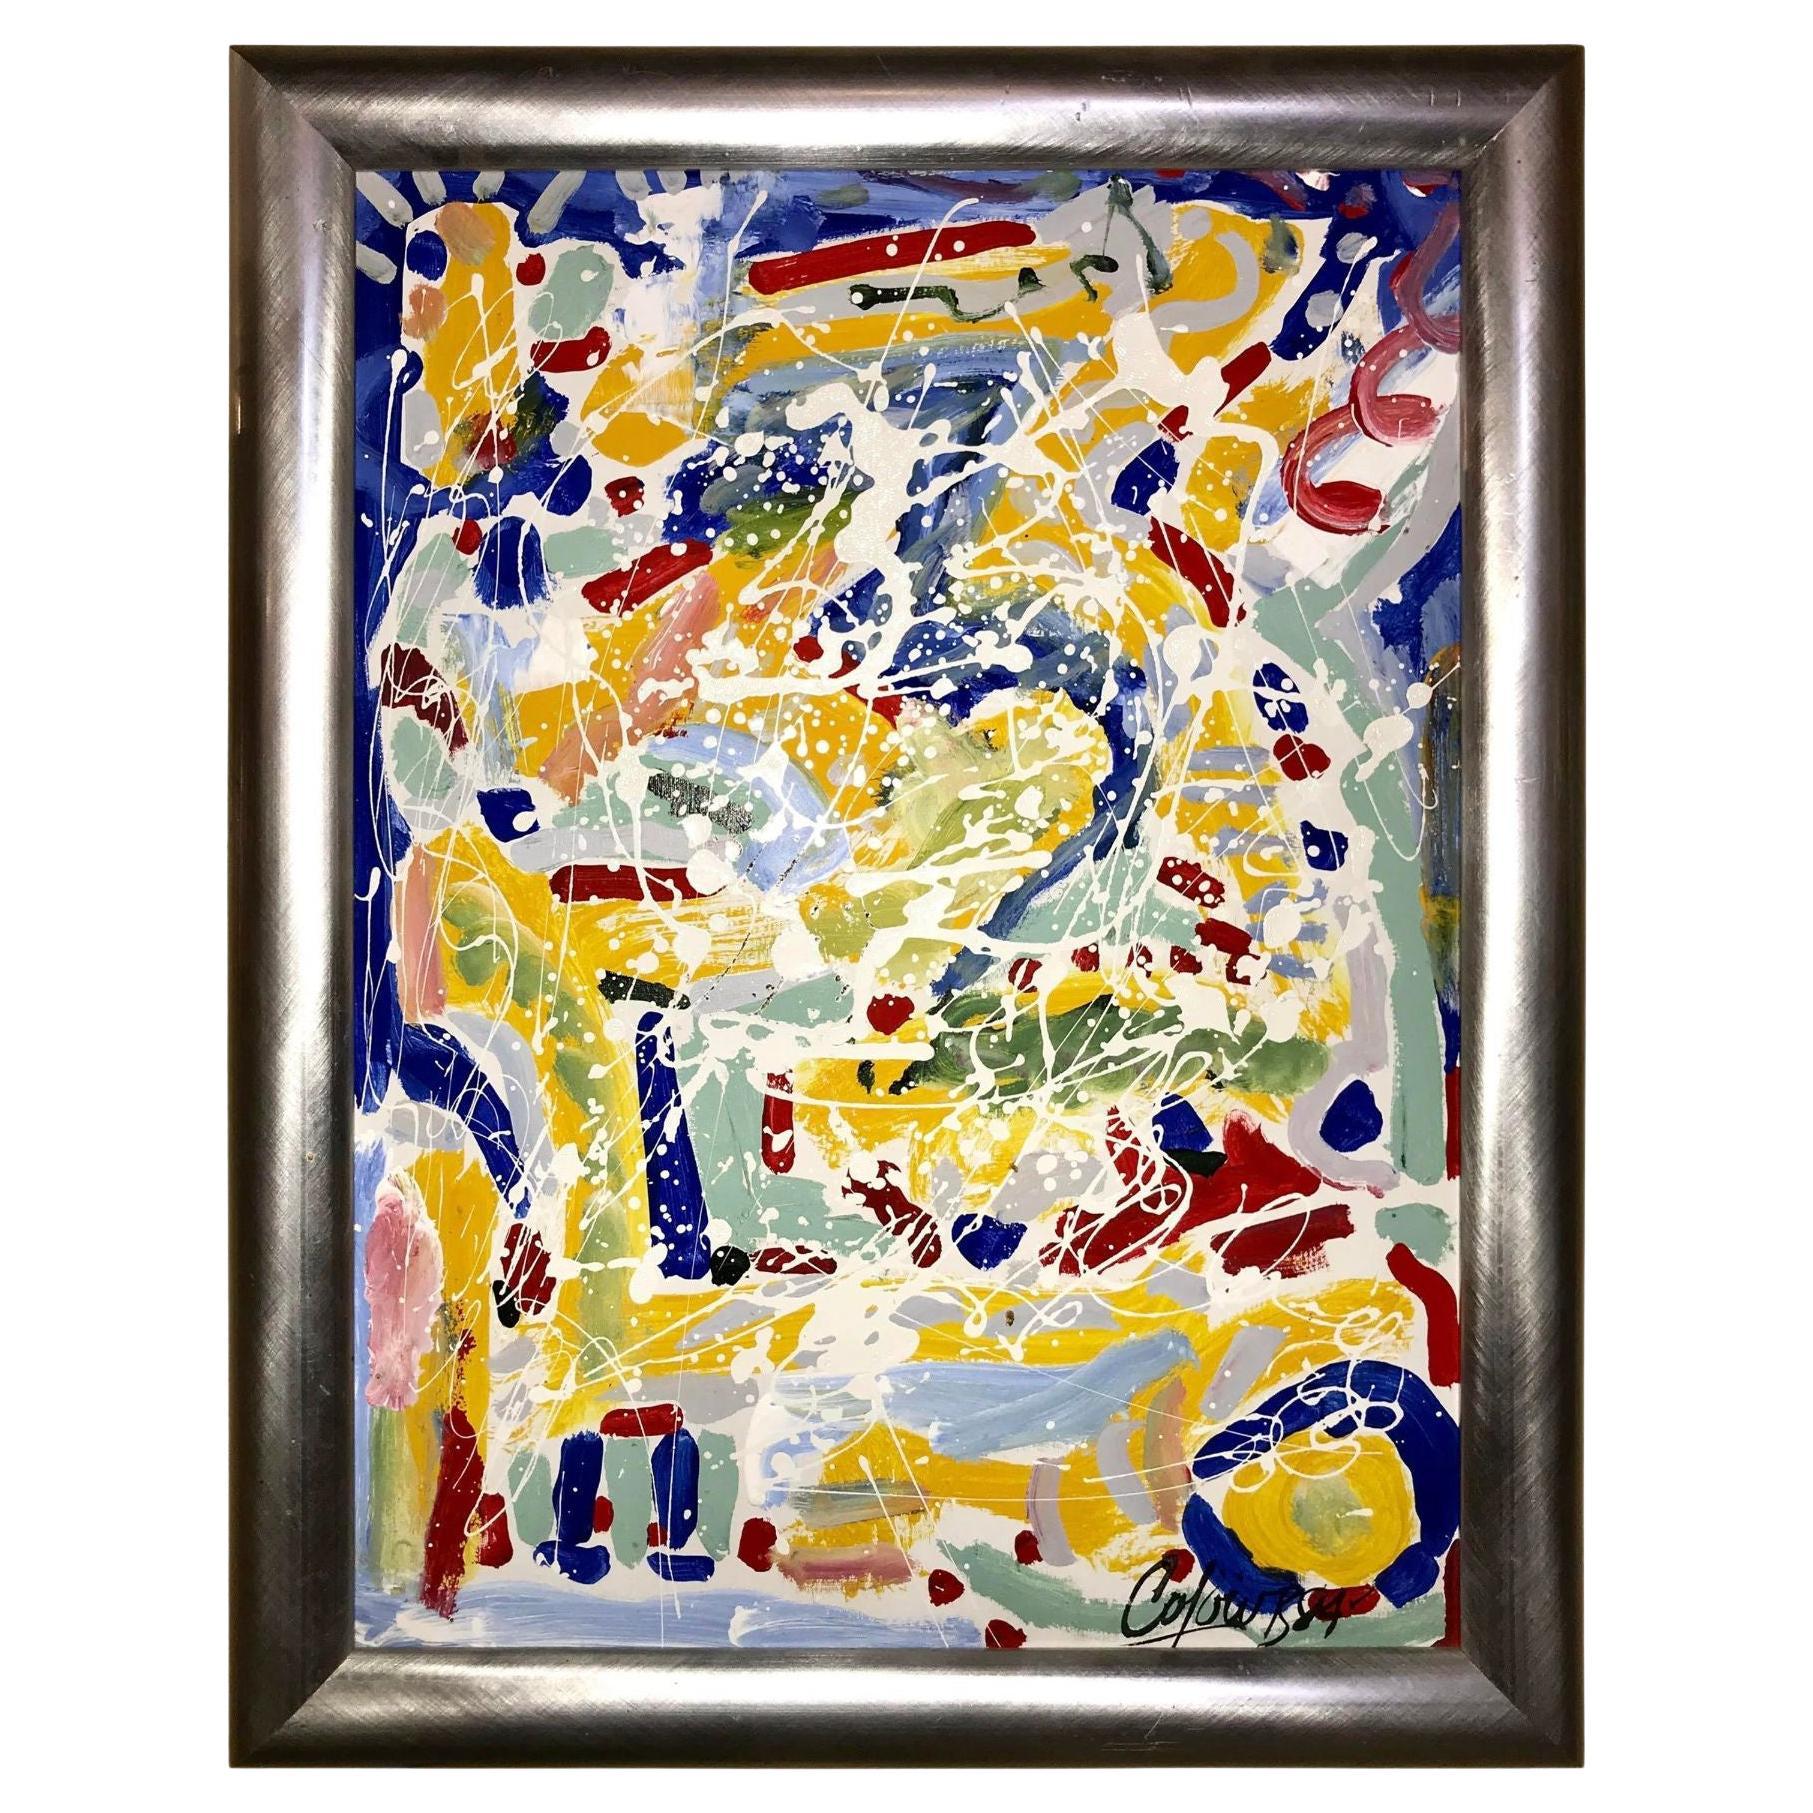 Peinture abstraite à l'huile sur toile de Colow B. datée de 1984